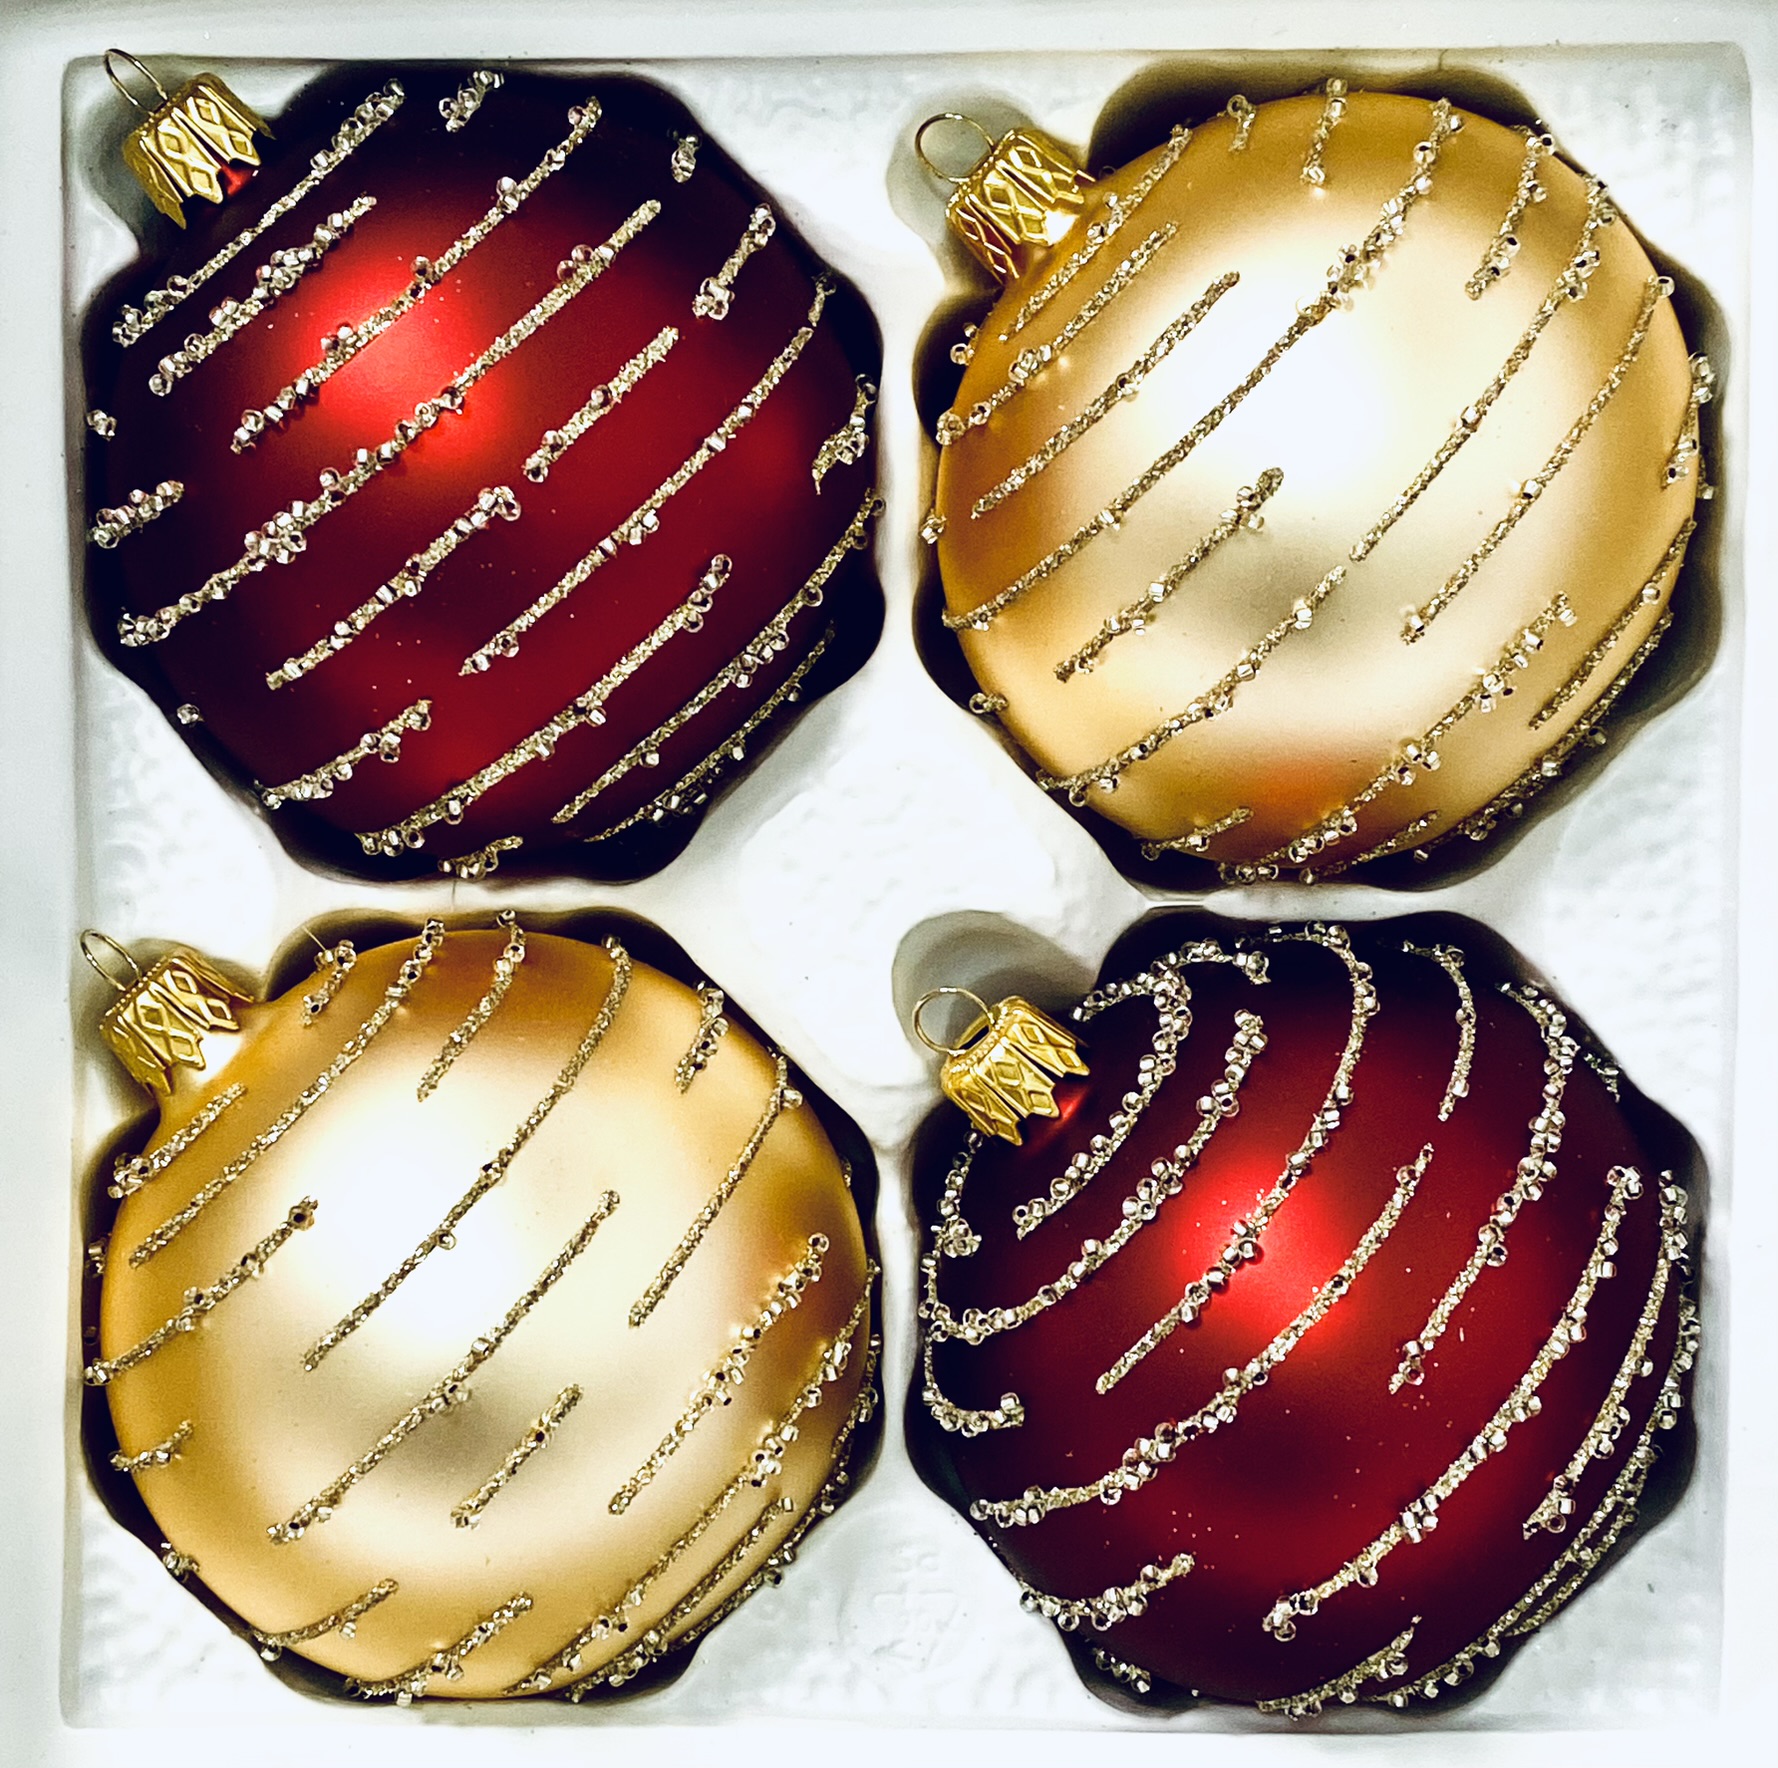 IRISA Ranní mlha ve zlatě a červeni: Skleněná vánoční sada 4 ks (Velikost 7 cm) Balení: 4 ks, Barva: zlatá;červená, Velikost: 7 cm